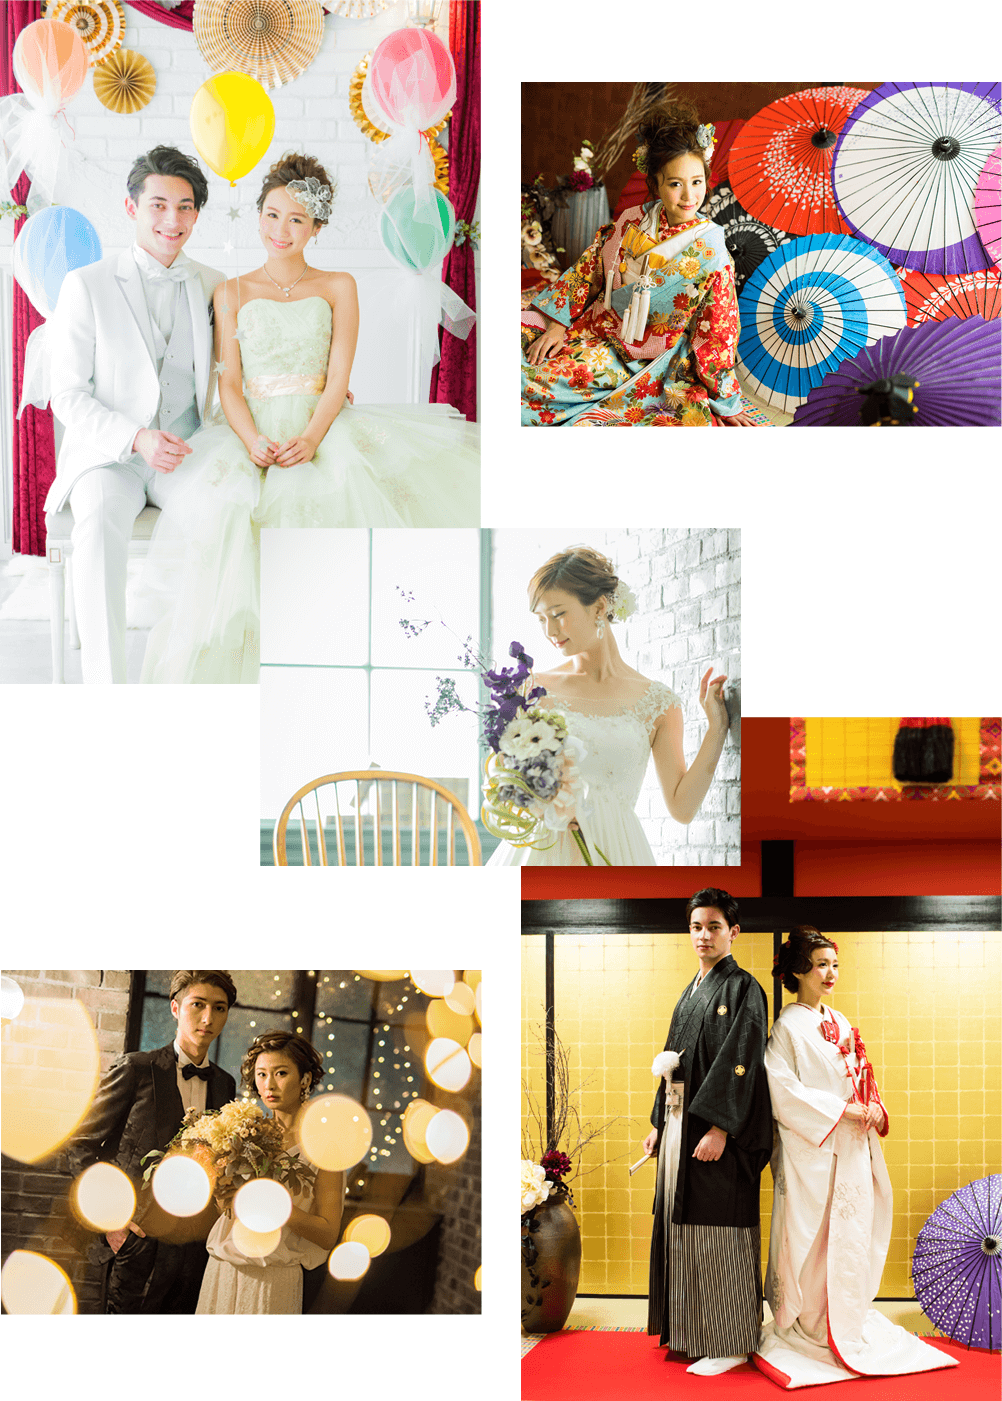 鮮やかな和装を着た花嫁と紋付姿の新郎の写真や、ウェディングドレスを着ている花嫁とタキシード姿の新郎の写真を組み合わせた、名古屋を中心に展開するマイブライドのフォトウェディング撮影のイメージ